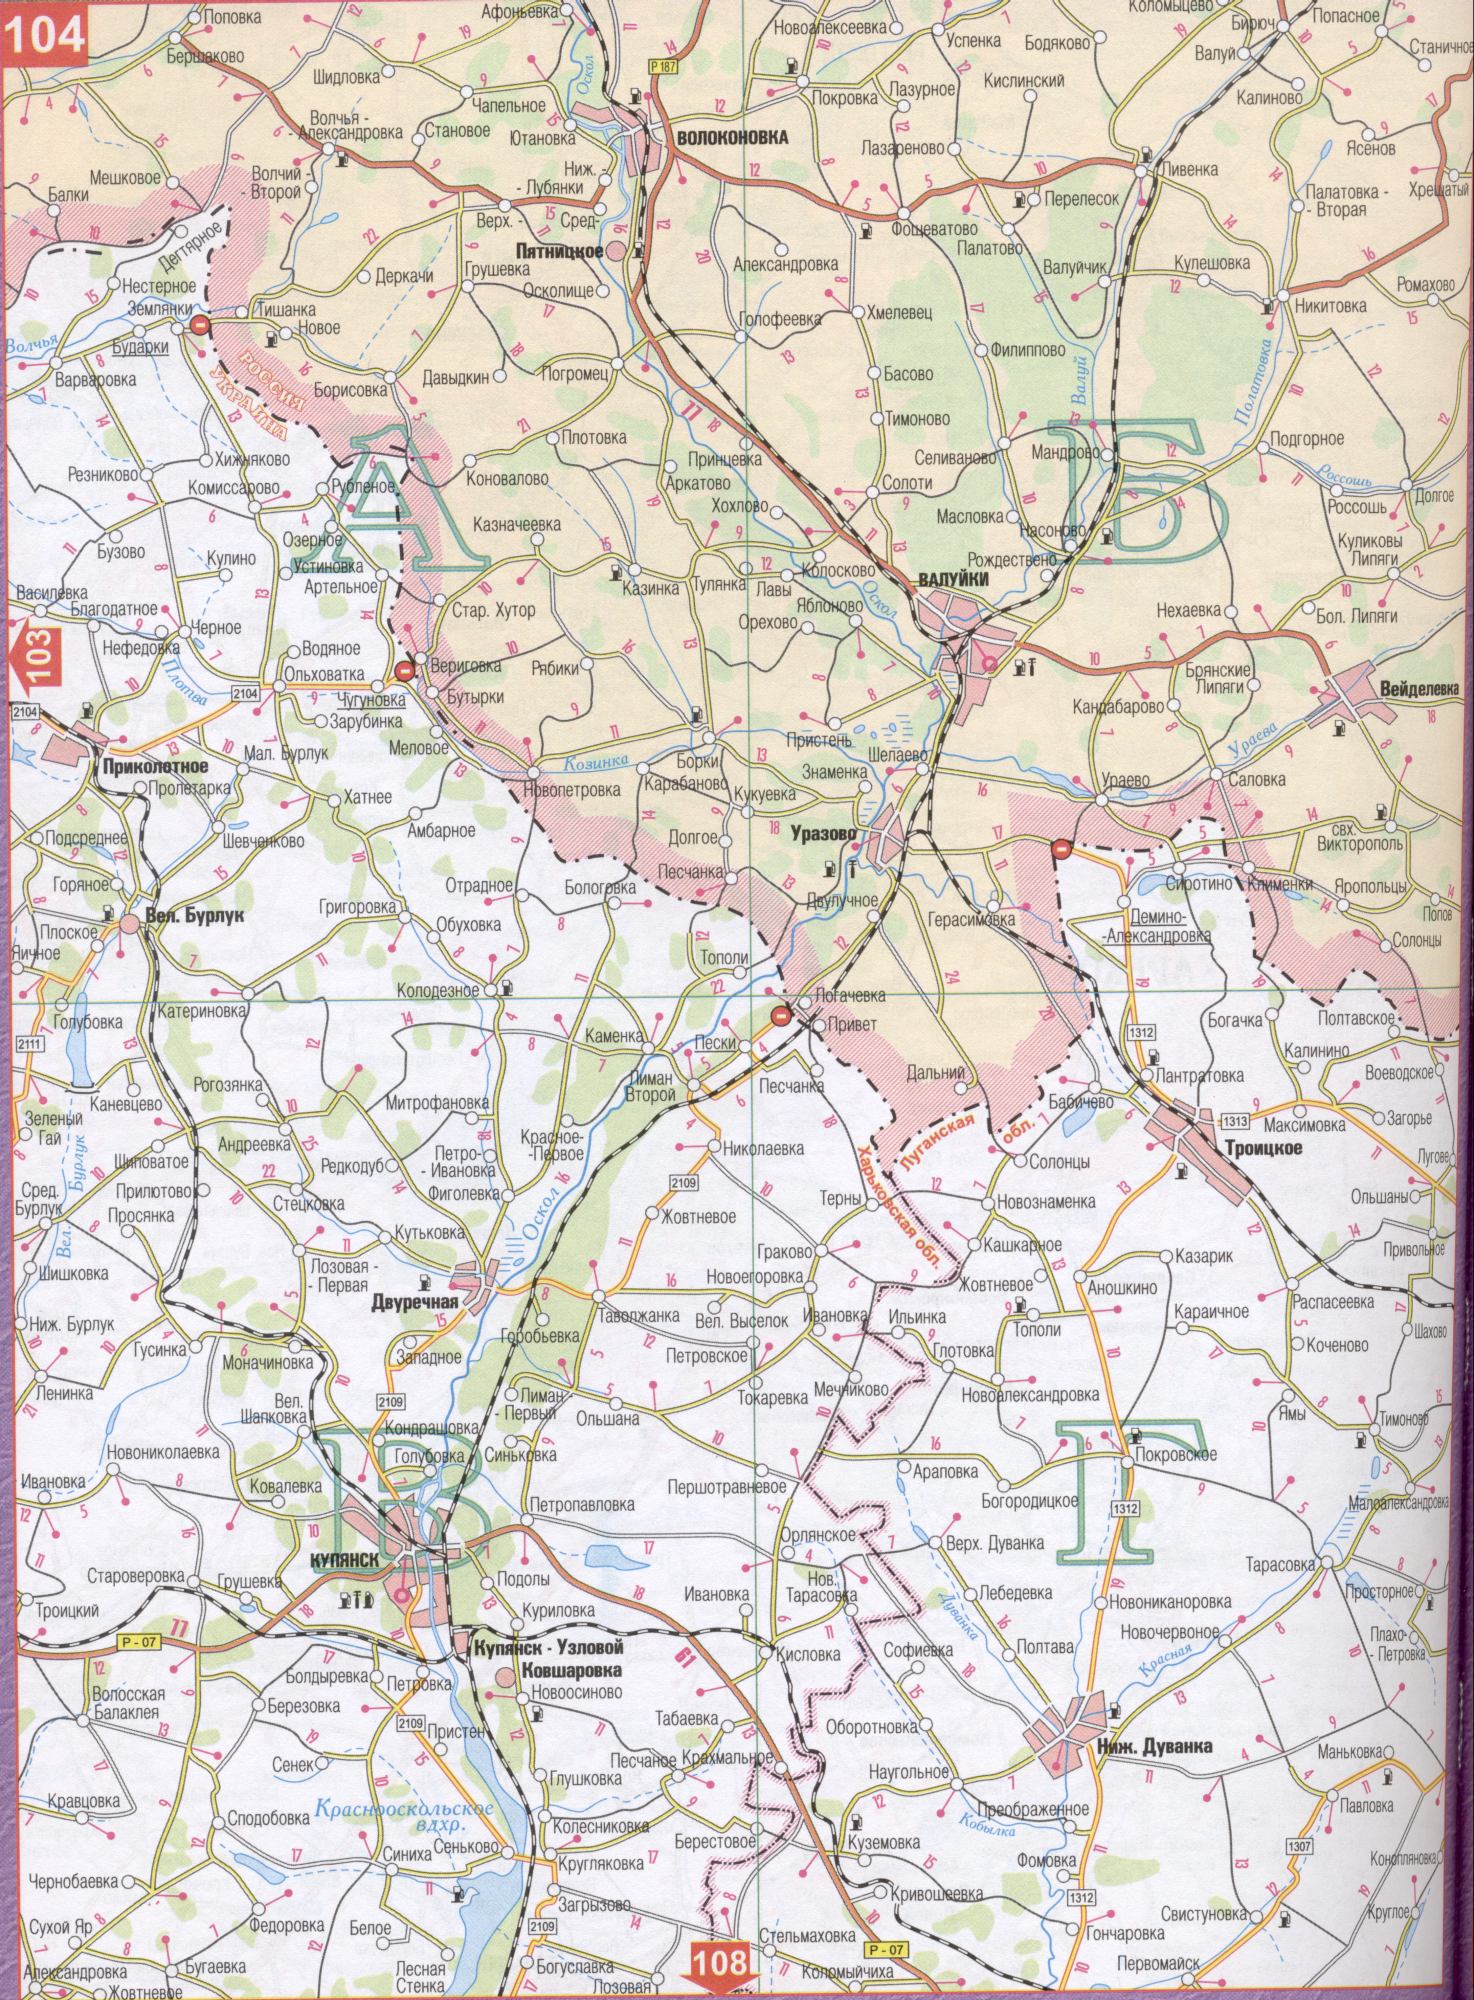 Karte von der Region Kharkiv in der Ukraine (Regionalzentrum von Charkow). Laden Sie eine detaillierte Karte von Straßen, C0